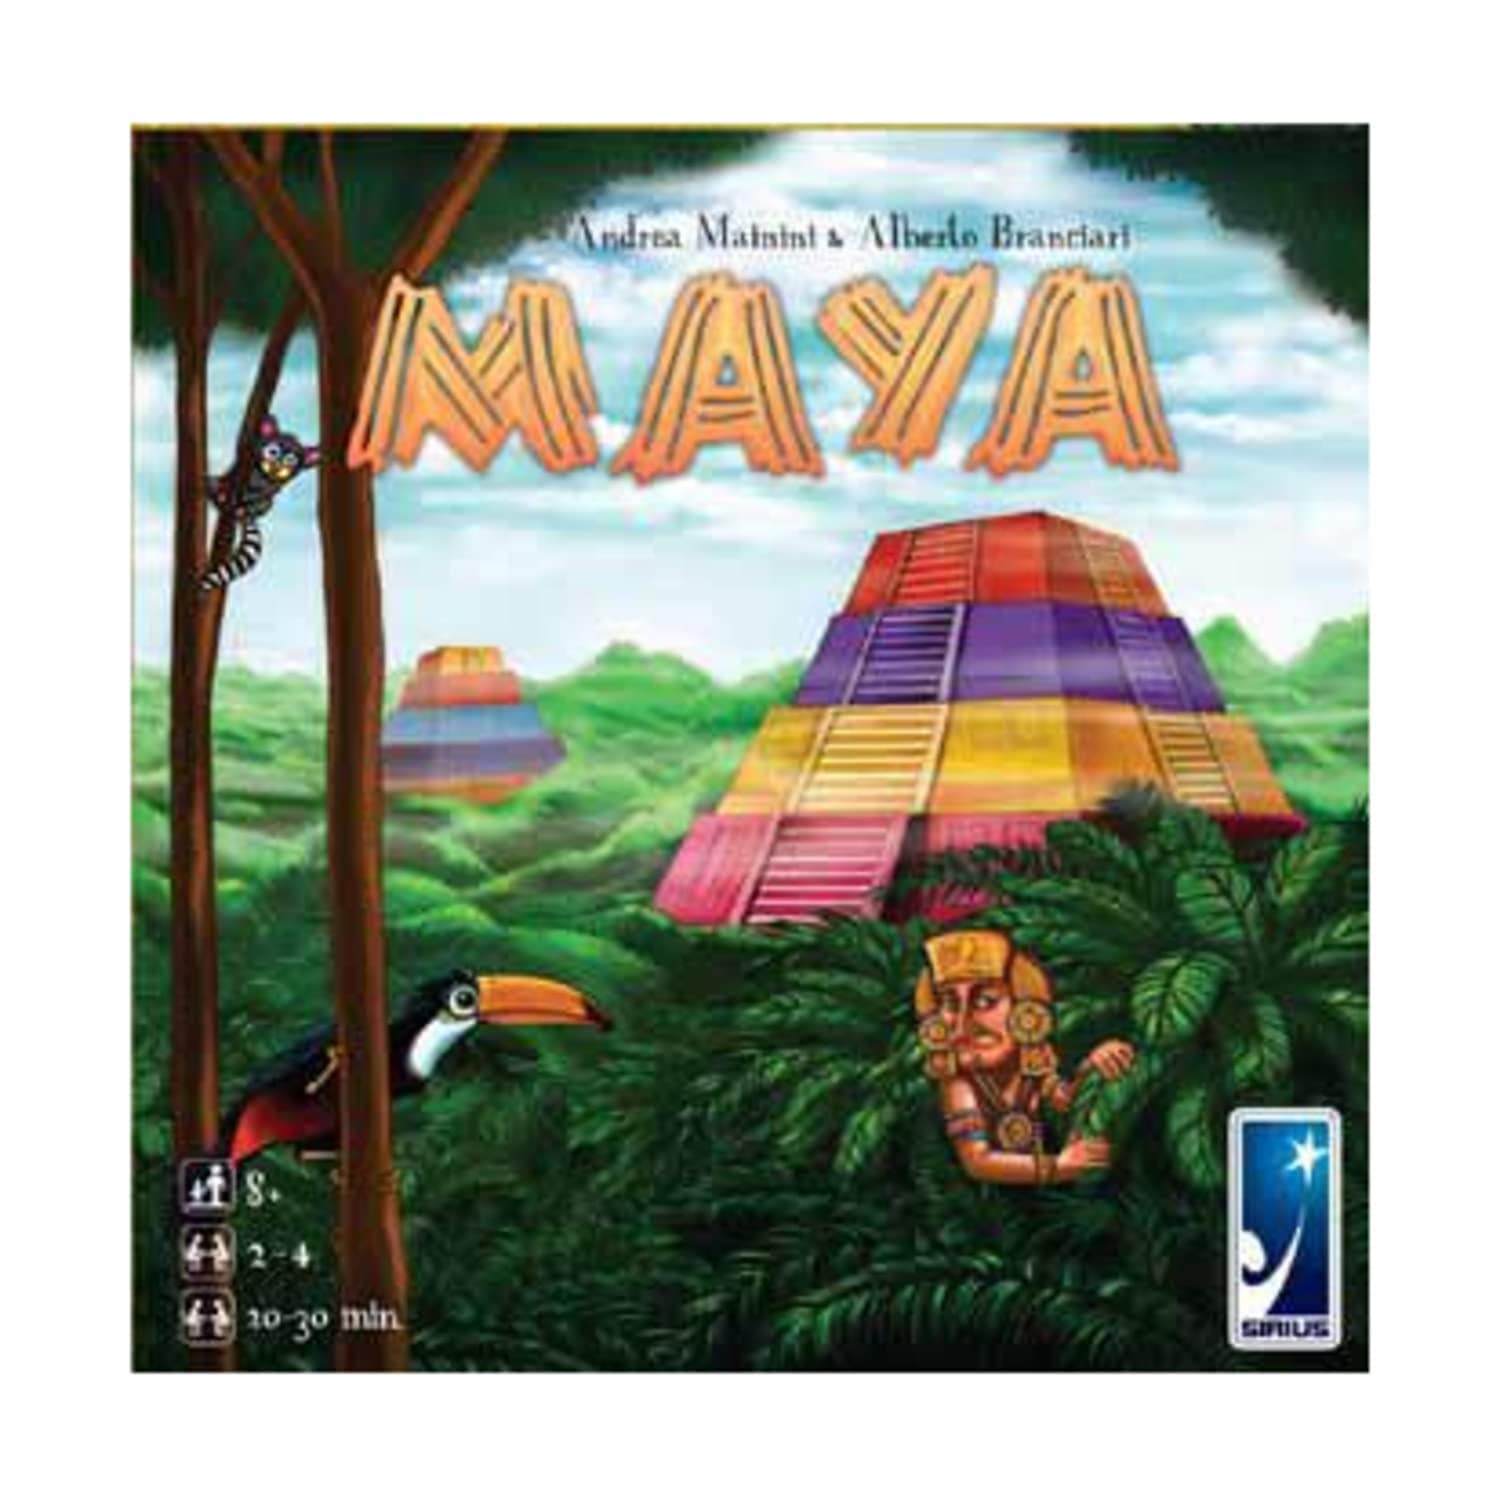 Zvezda Board Games Zvezda Maya